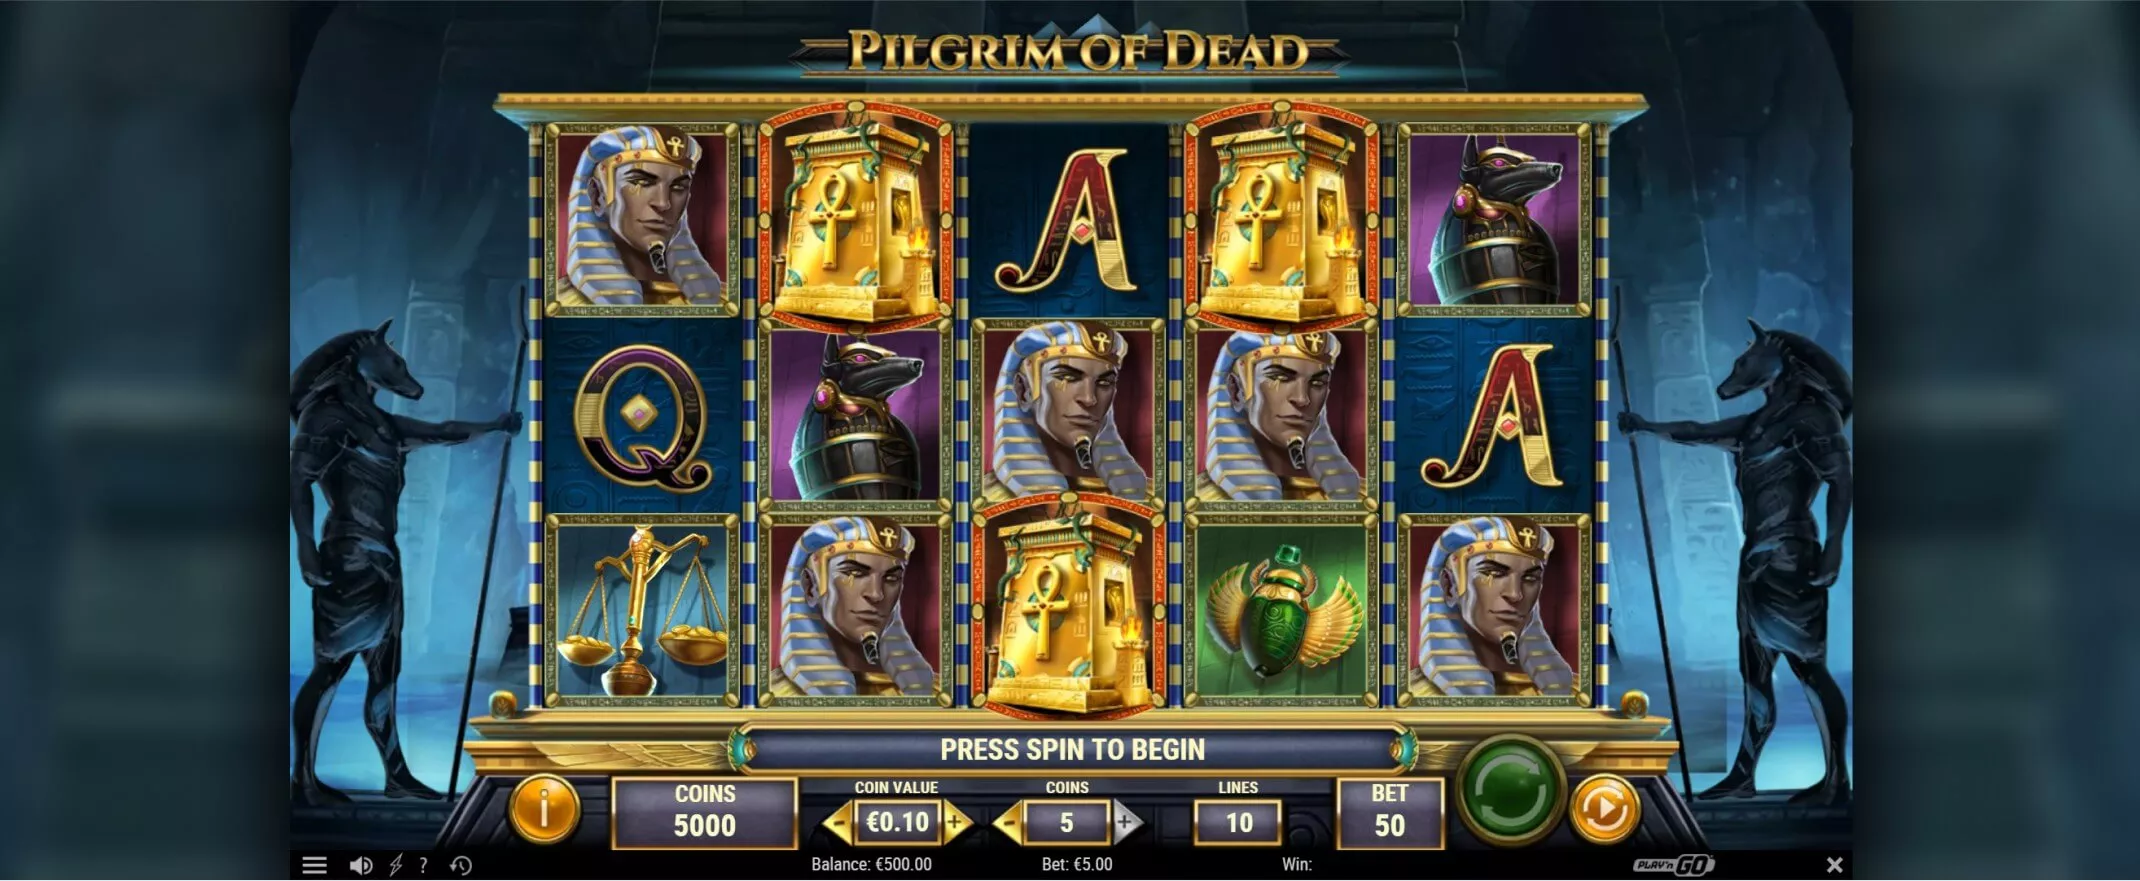 Pilgrim Of Dead spelautomat